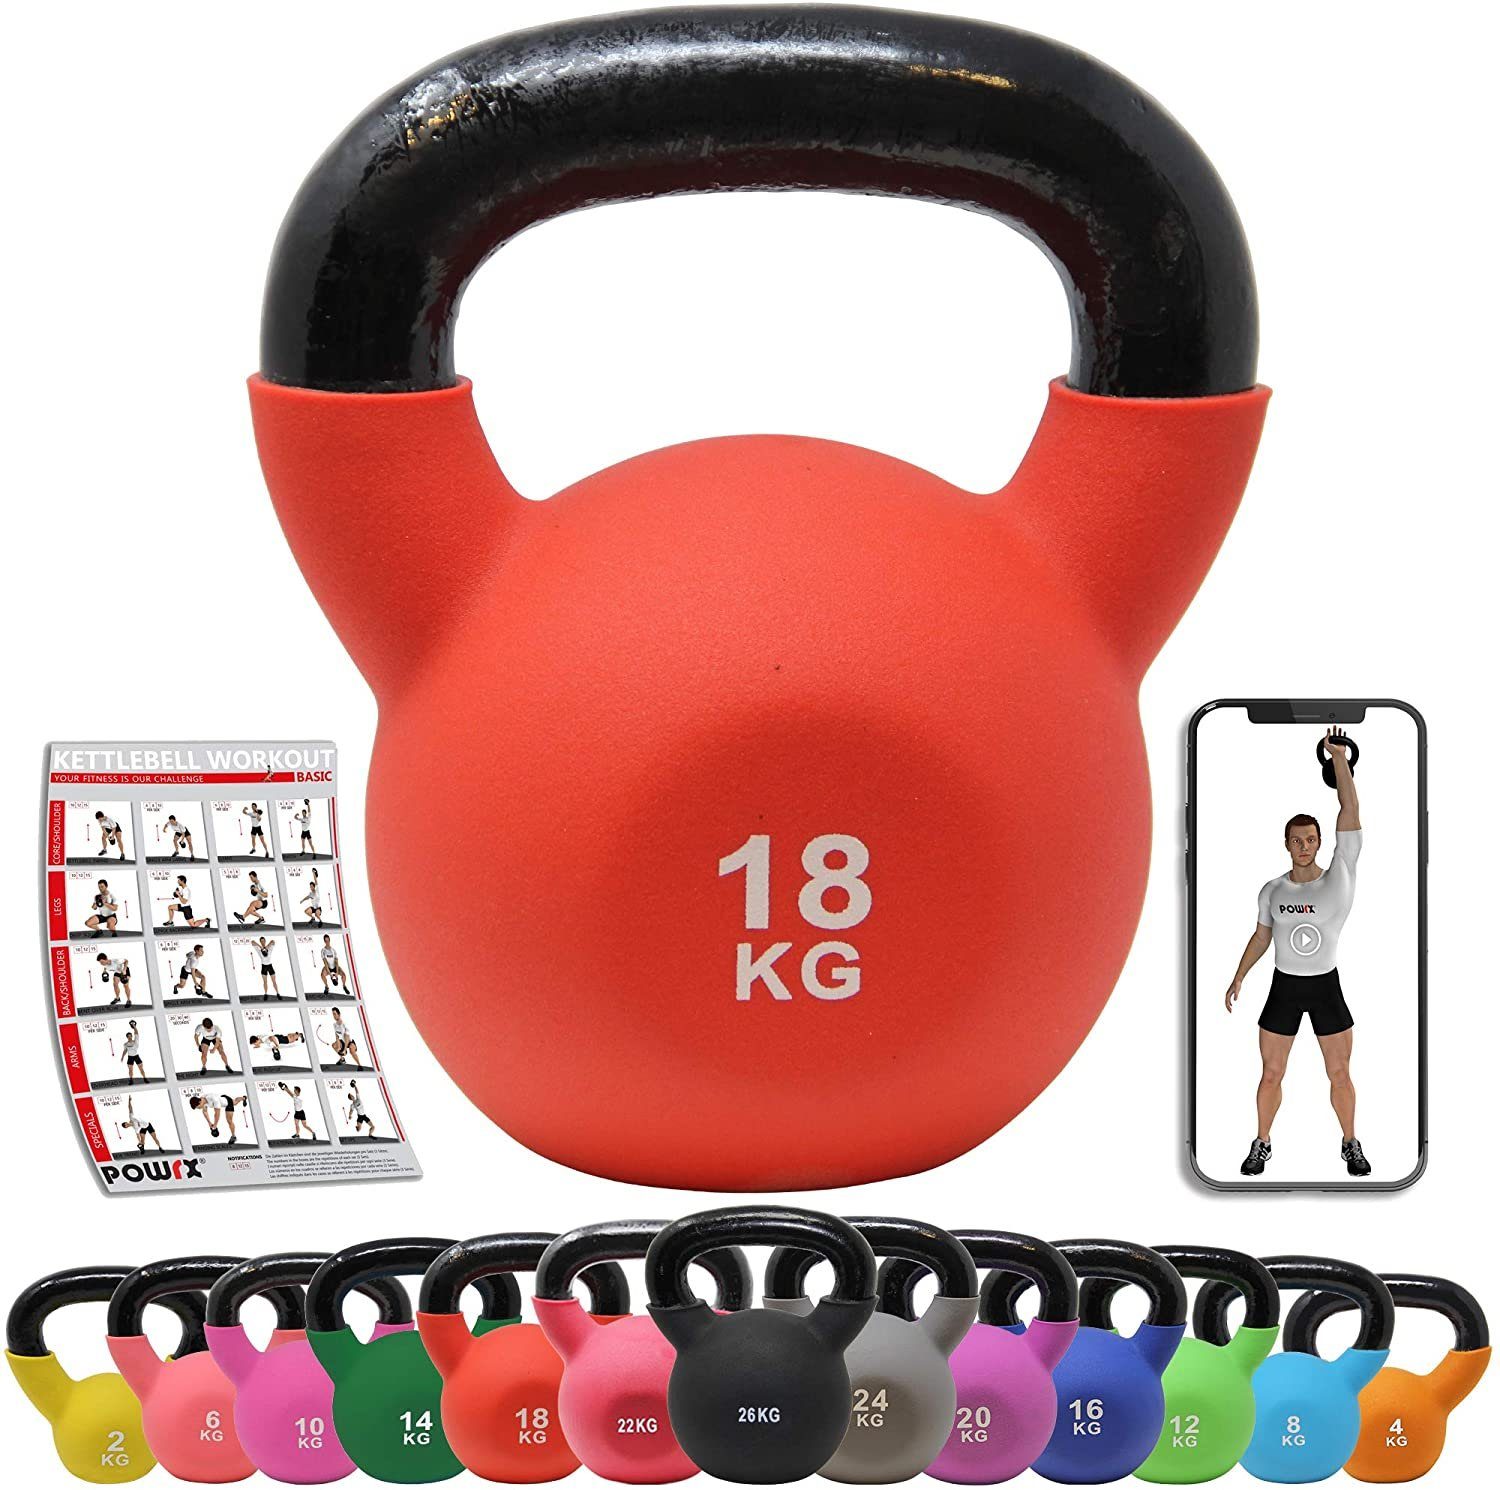 POWRX Kettlebell kg 2 Kugelhantel Neopren Kg Farben/Gewichte, versch. (Gelb) inkl. Workout, 2-26